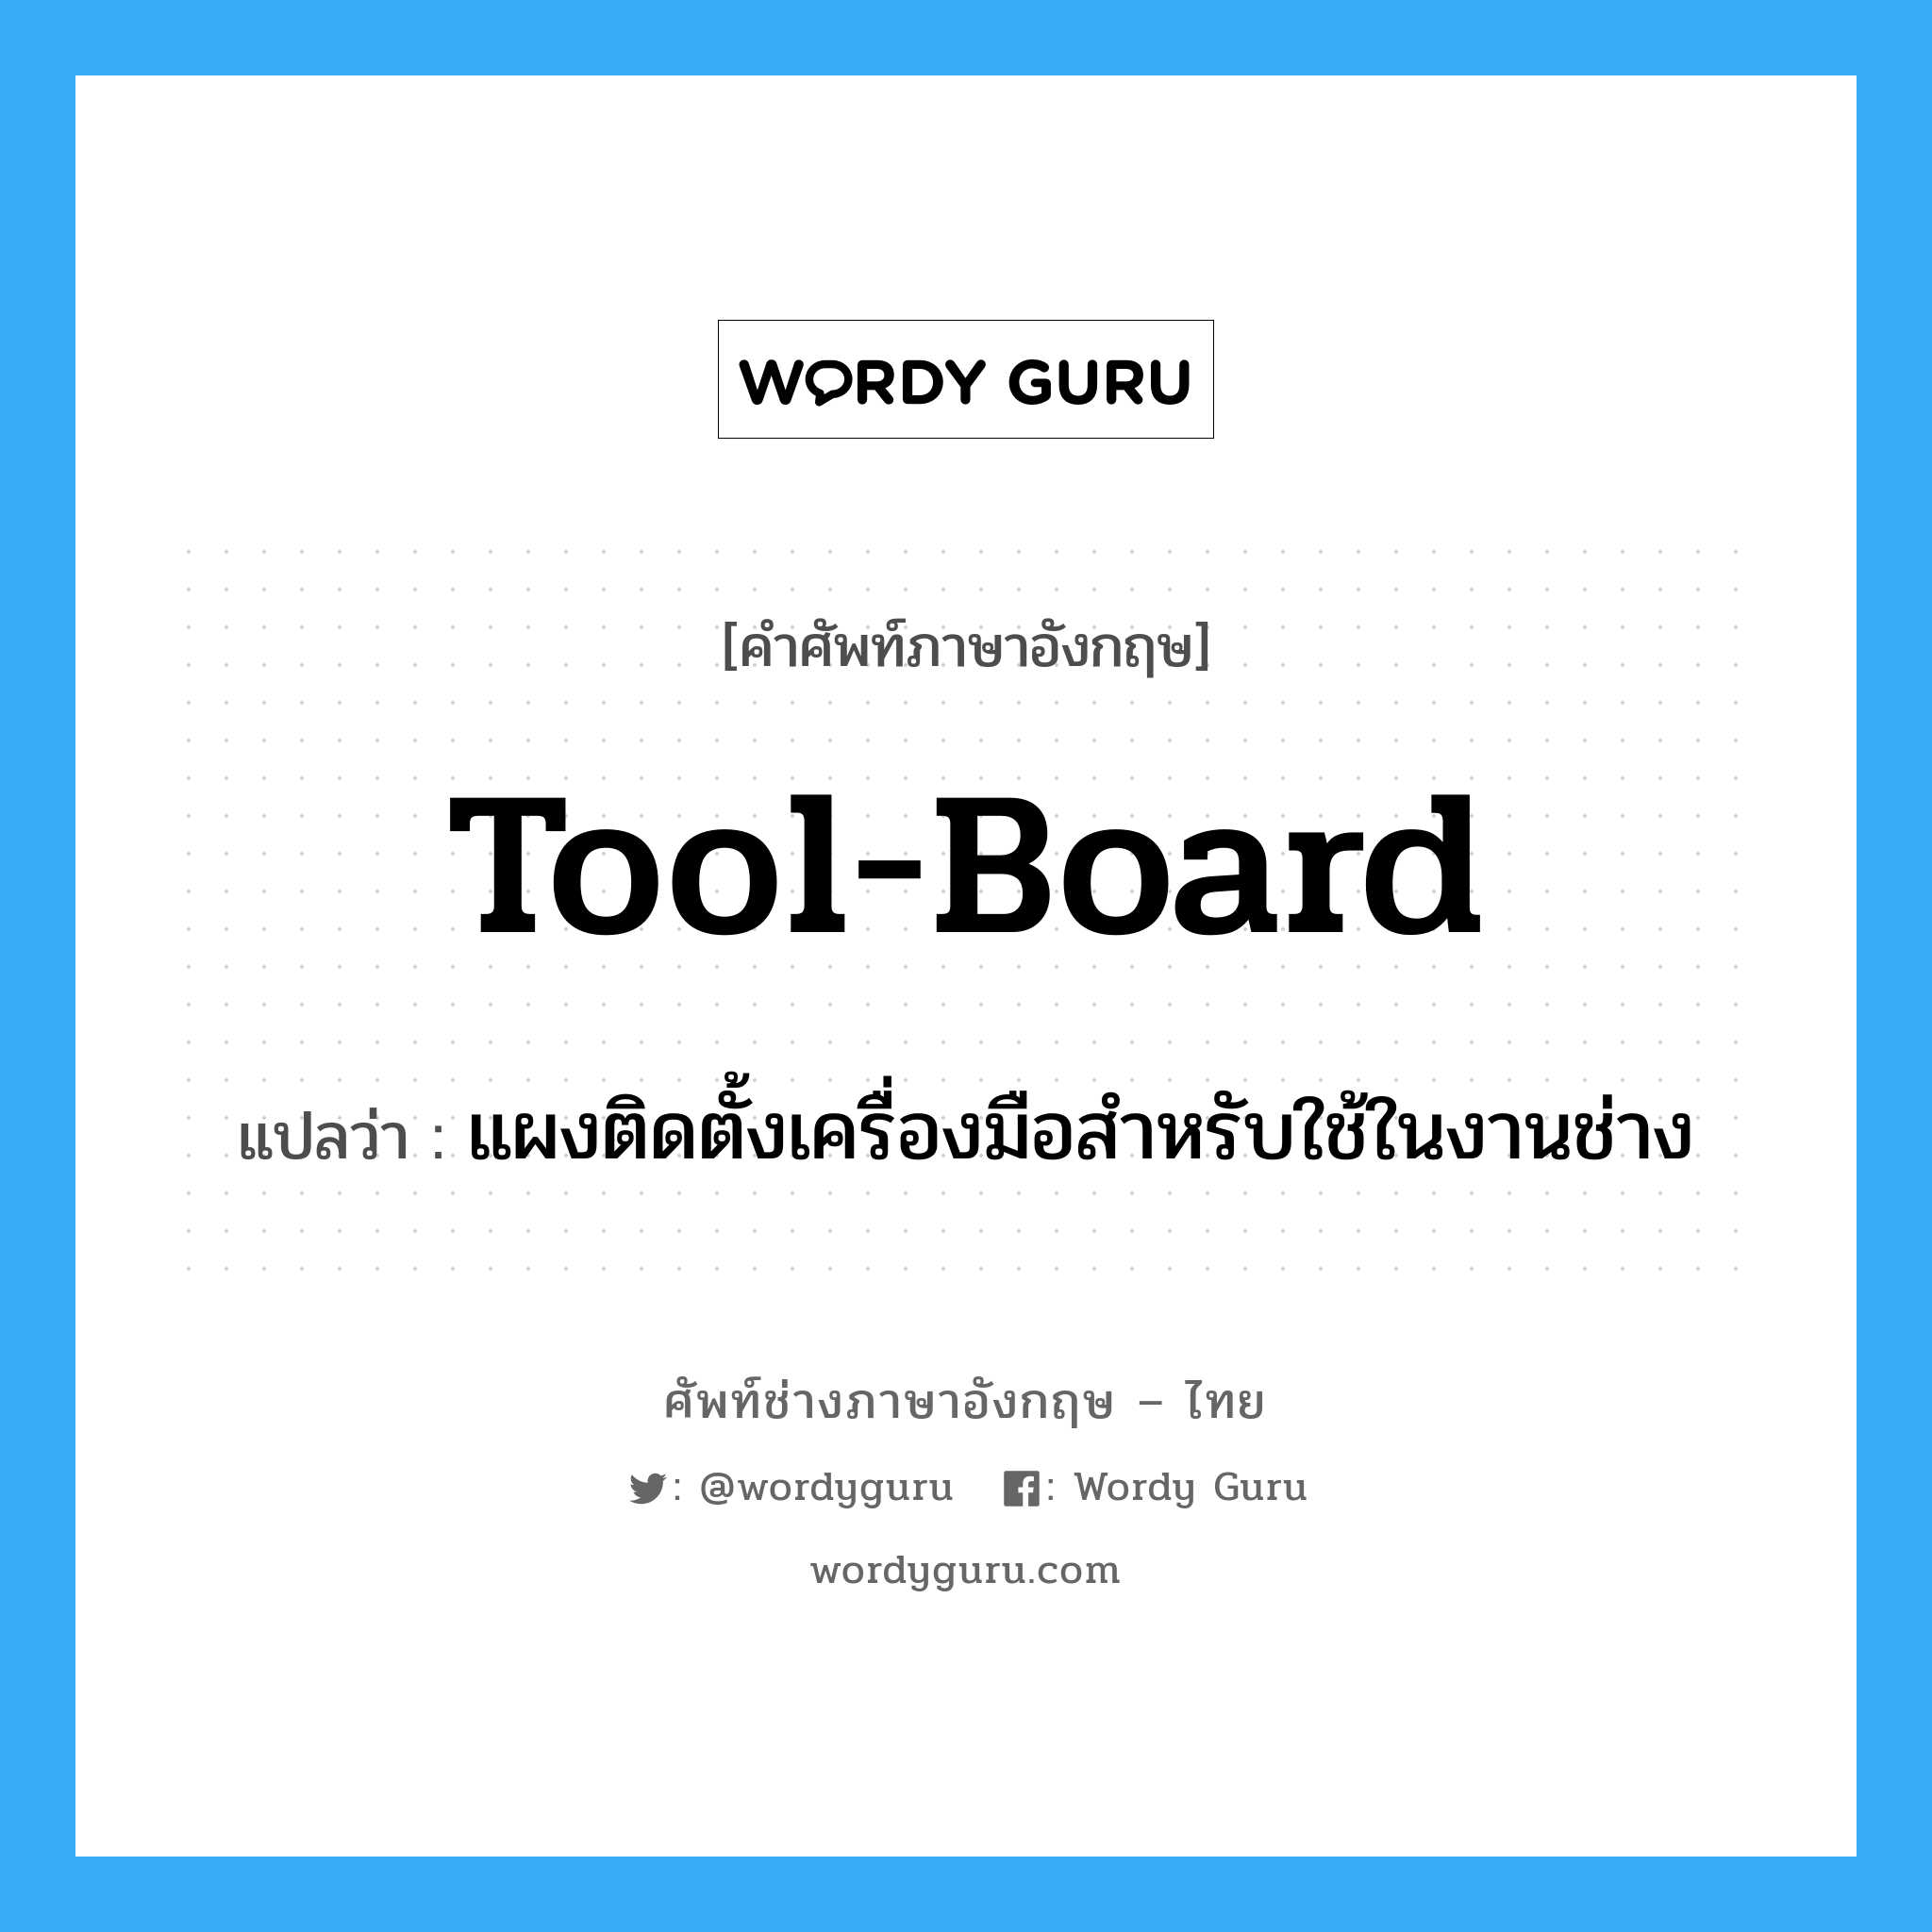 tool-board แปลว่า?, คำศัพท์ช่างภาษาอังกฤษ - ไทย tool-board คำศัพท์ภาษาอังกฤษ tool-board แปลว่า แผงติดตั้งเครื่องมือสำหรับใช้ในงานช่าง